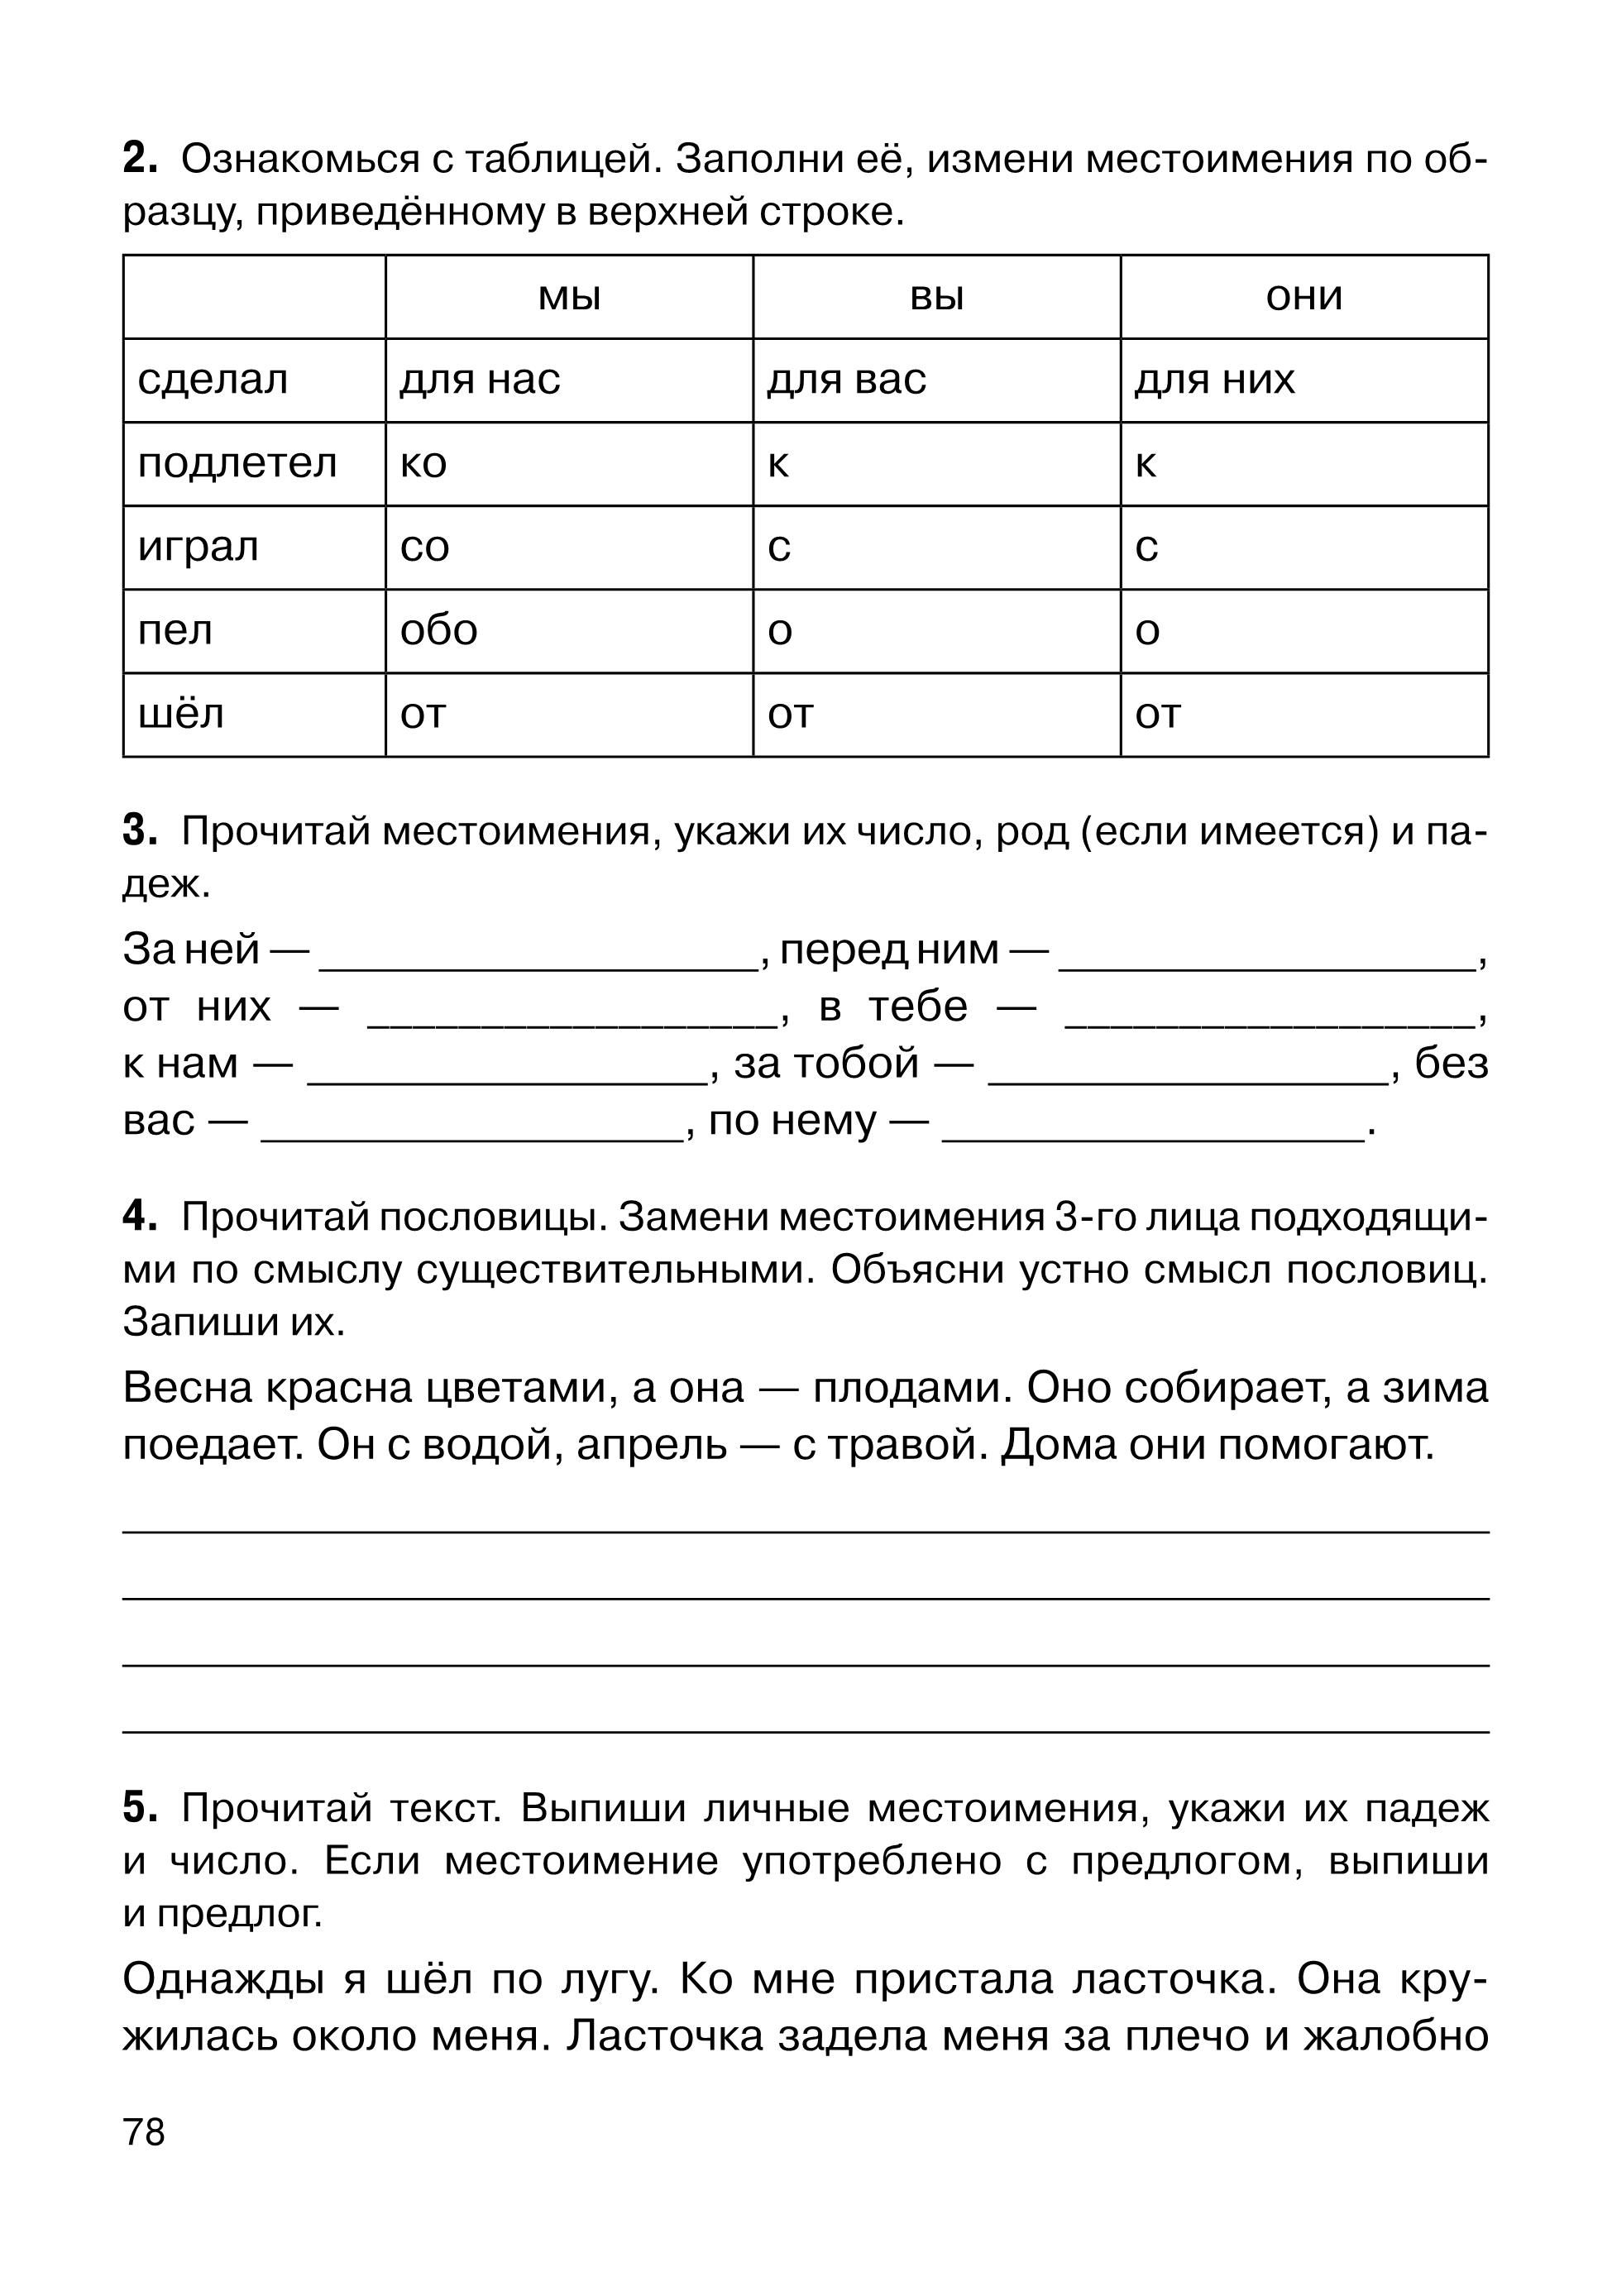 Русский язык. ВПР. 6-й класс. 10 тренировочных вариантов. Изд. 3-е